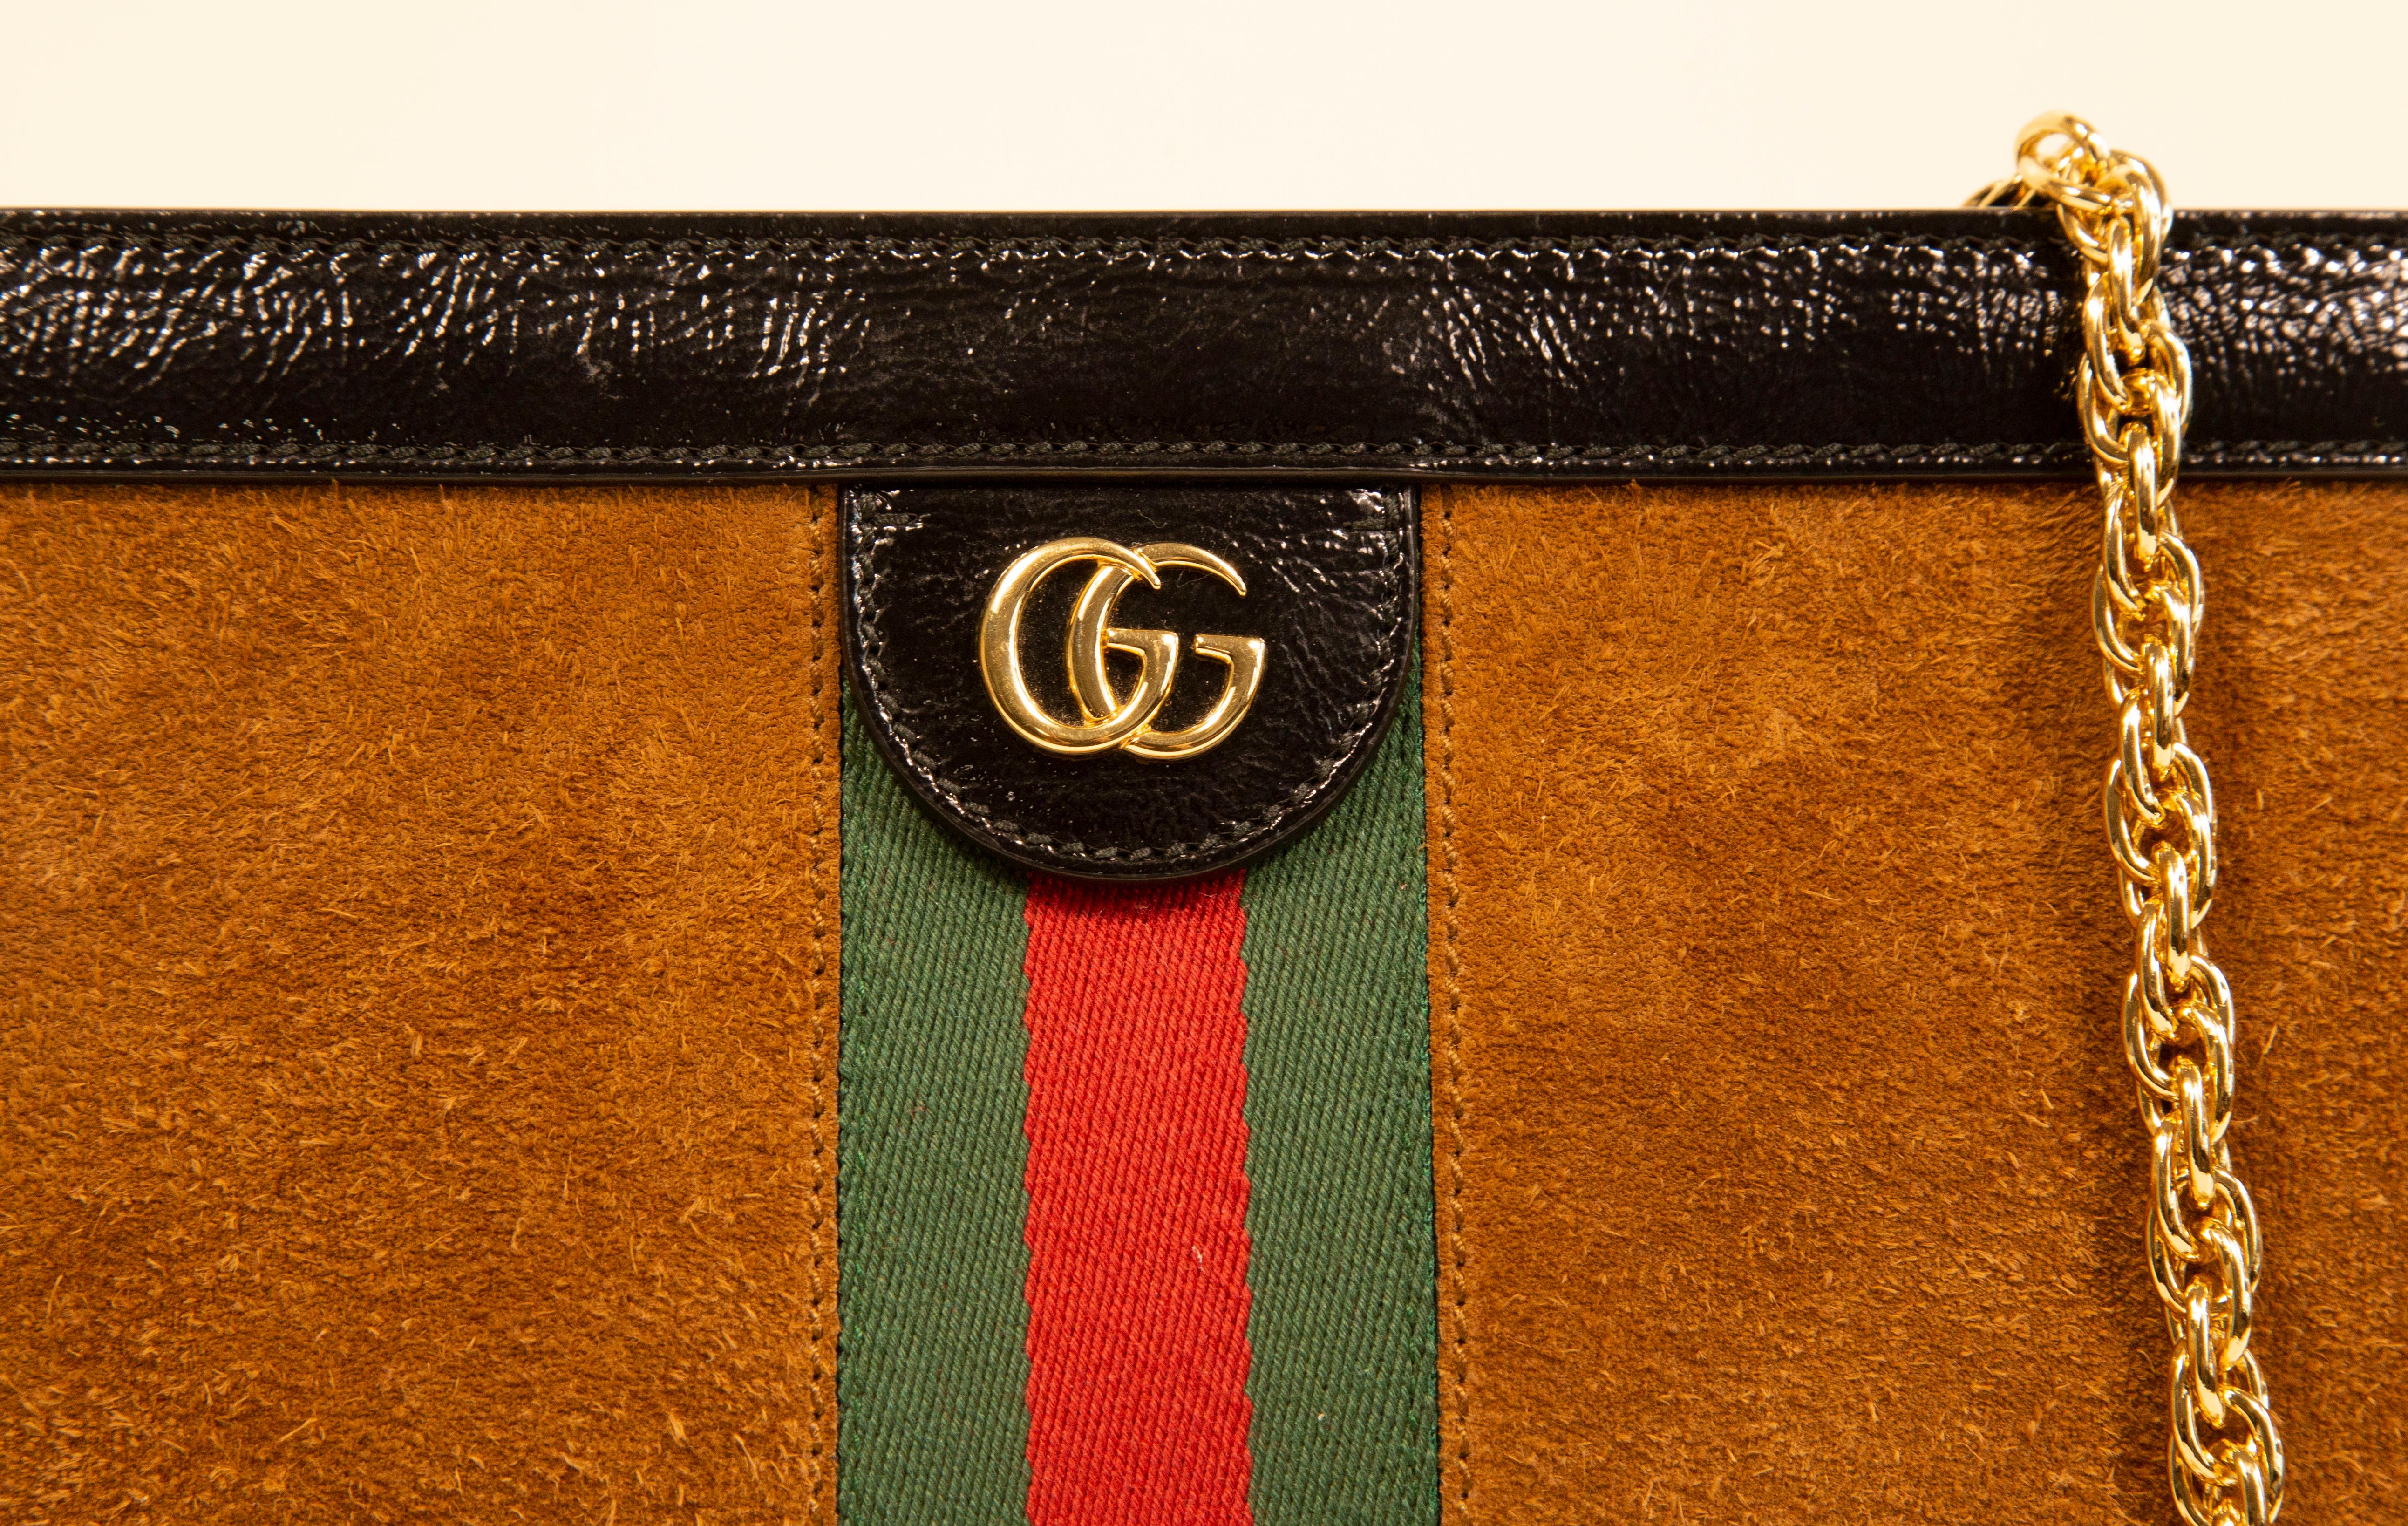 Un sac à bandoulière Gucci Ophidia Chain en daim marron cognac avec des garnitures en cuir verni noir et des ferrures en ton or. L'intérieur est doublé d'un tissu soyeux bleu. Le compartiment intérieur est divisé en deux compartiments dont l'un